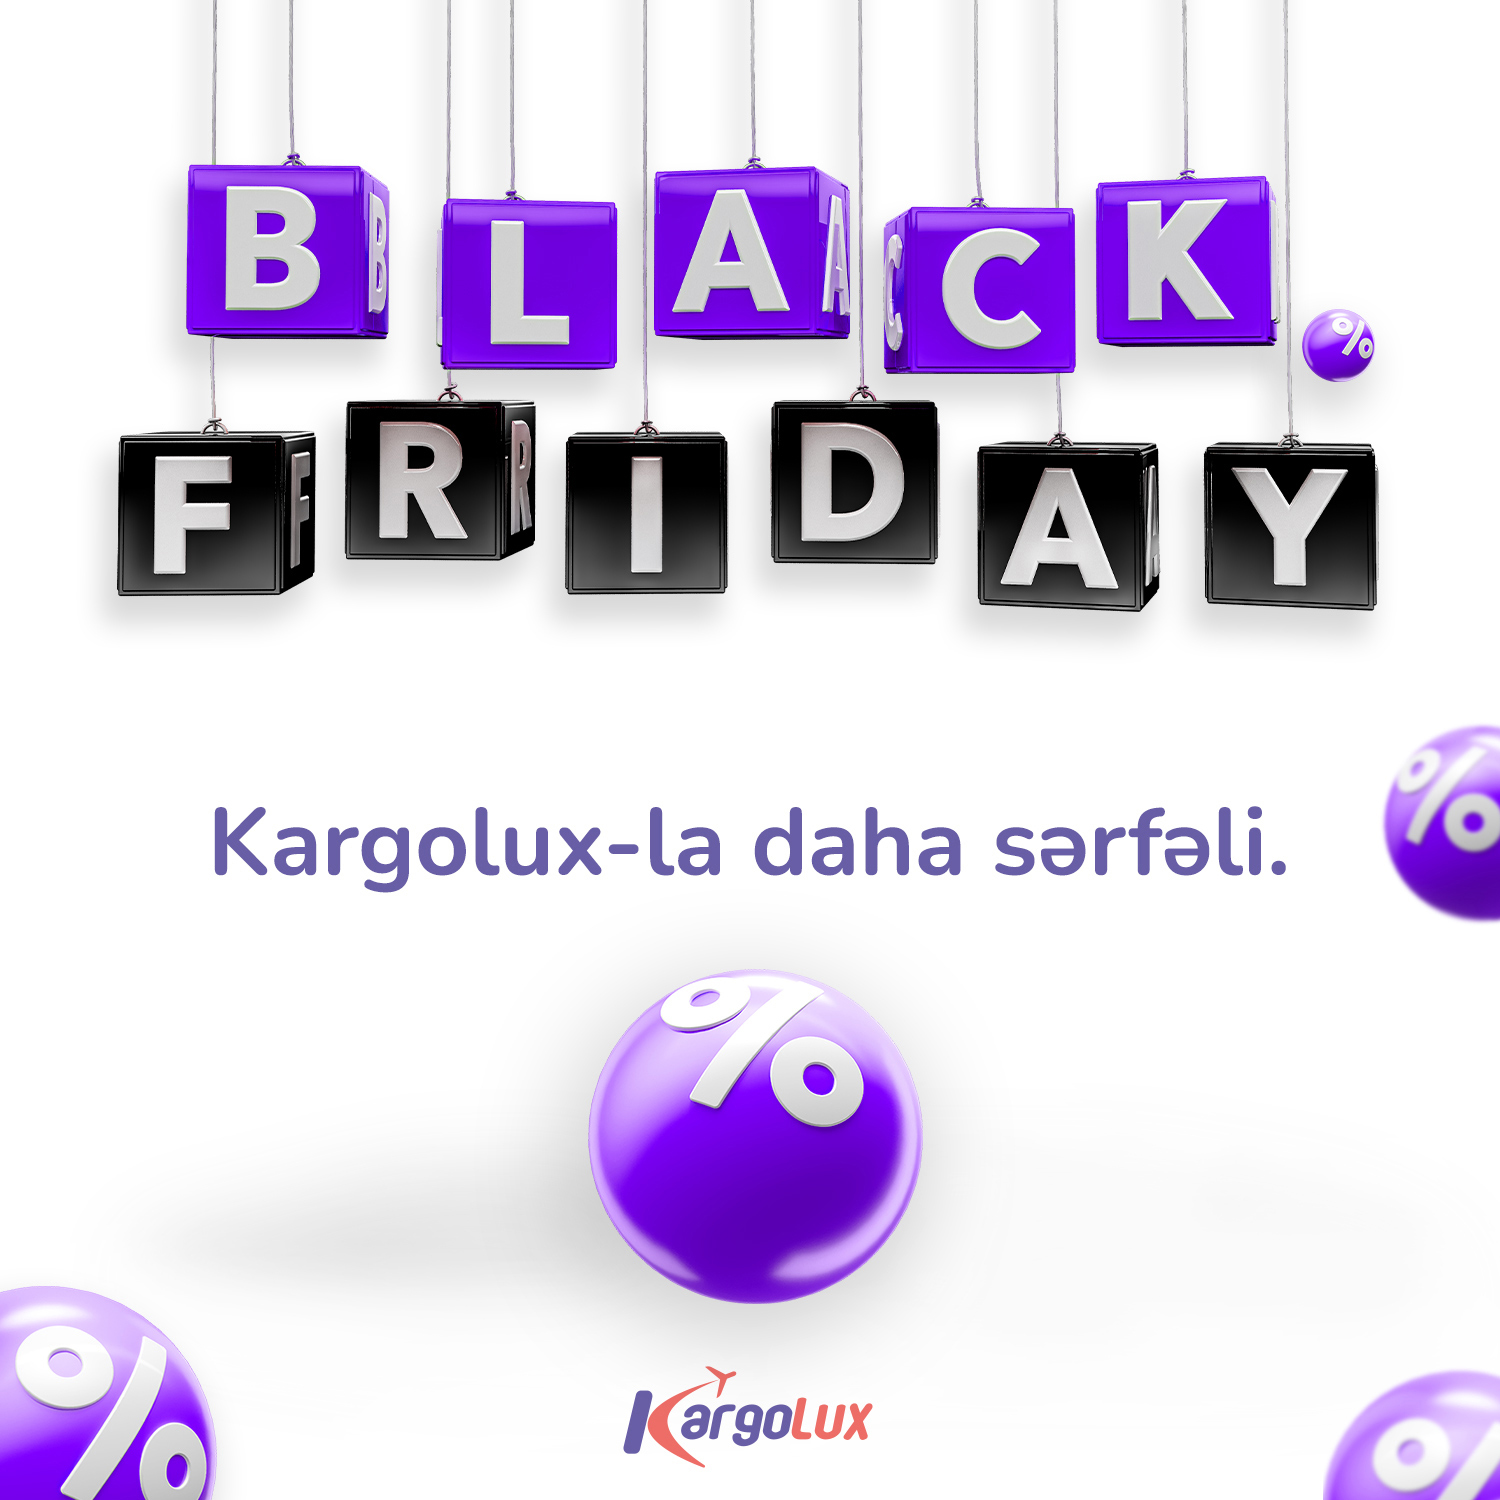 “Black Friday” günləri Kargolux-la daha sərfəli.